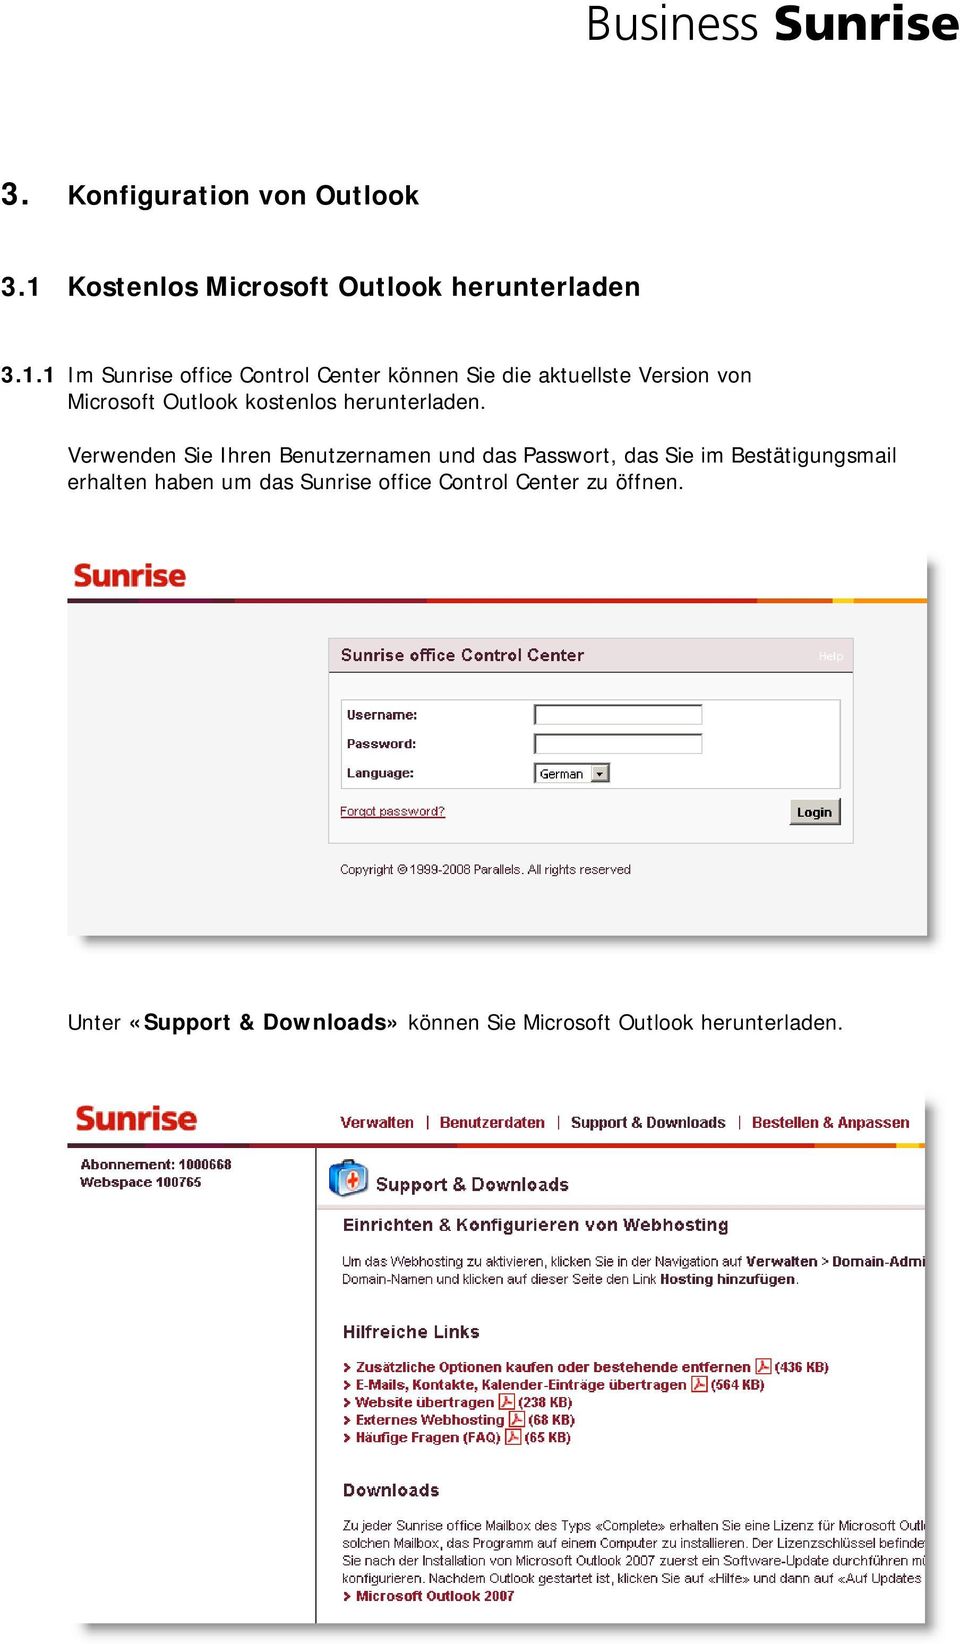 1 Im Sunrise office Control Center können Sie die aktuellste Version von Microsoft Outlook kostenlos